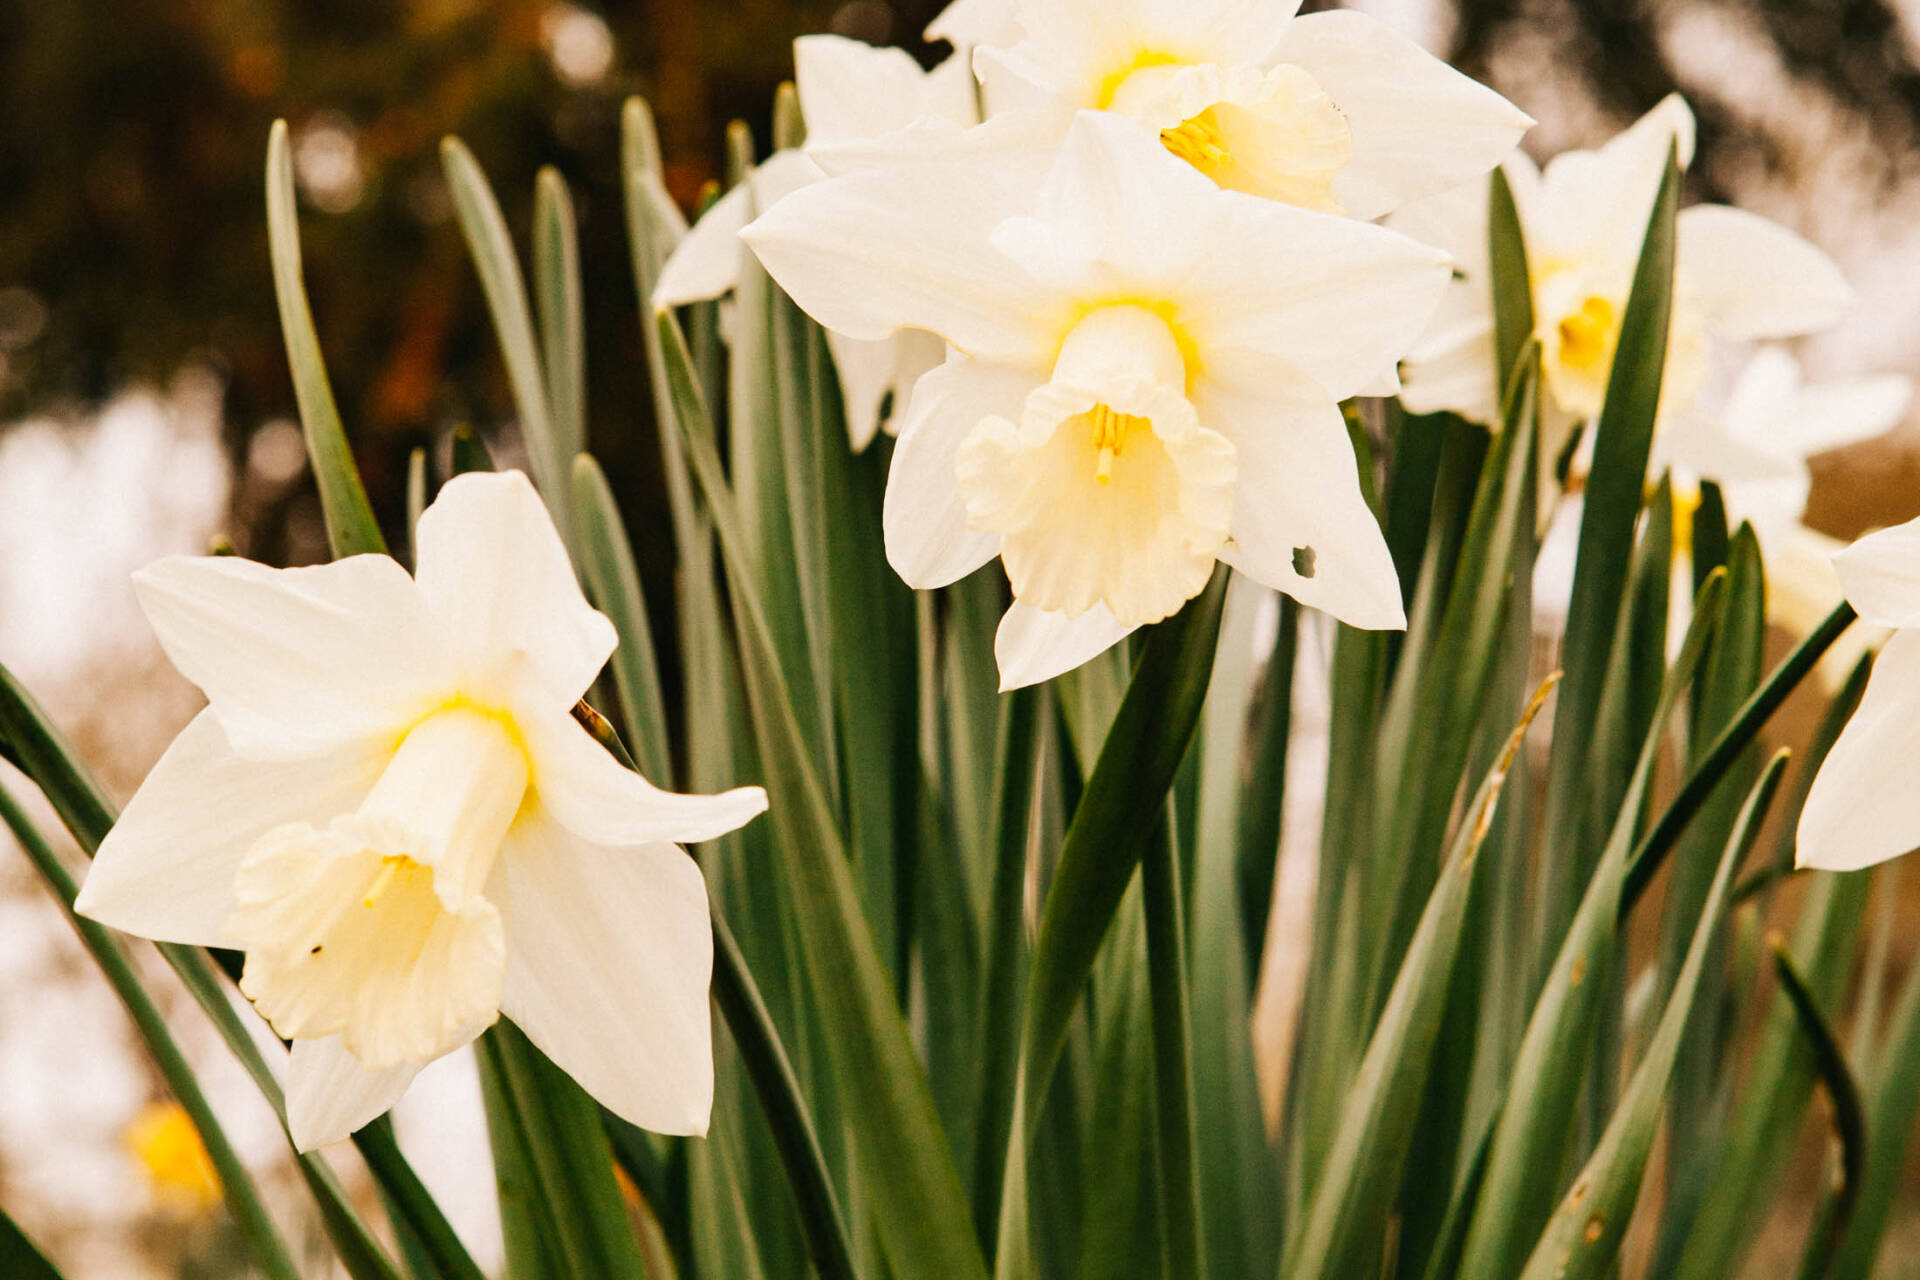 White Daffodils.